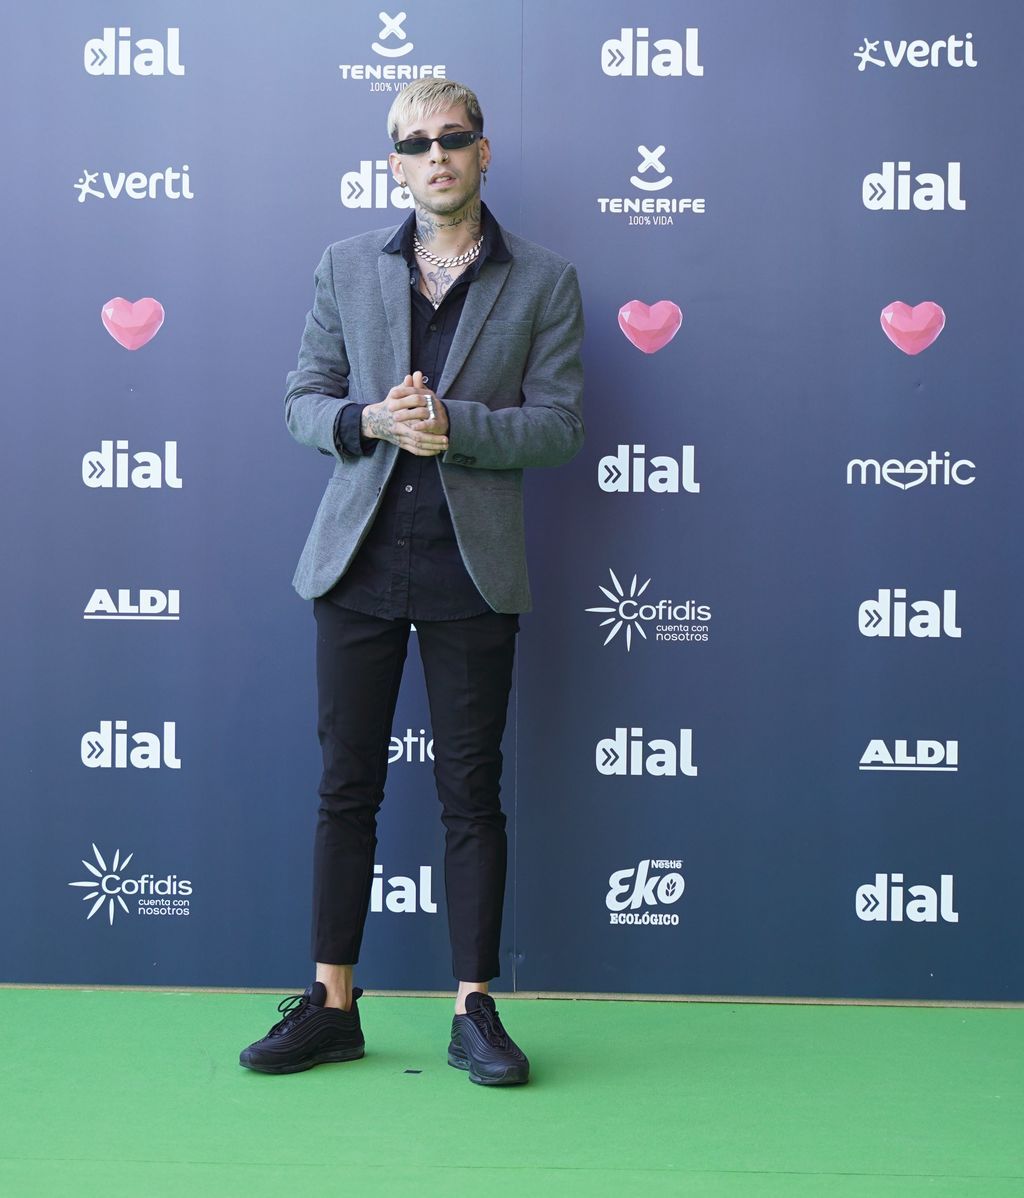 La alfombra verde de los Premios Cadena Dial, foto a foto